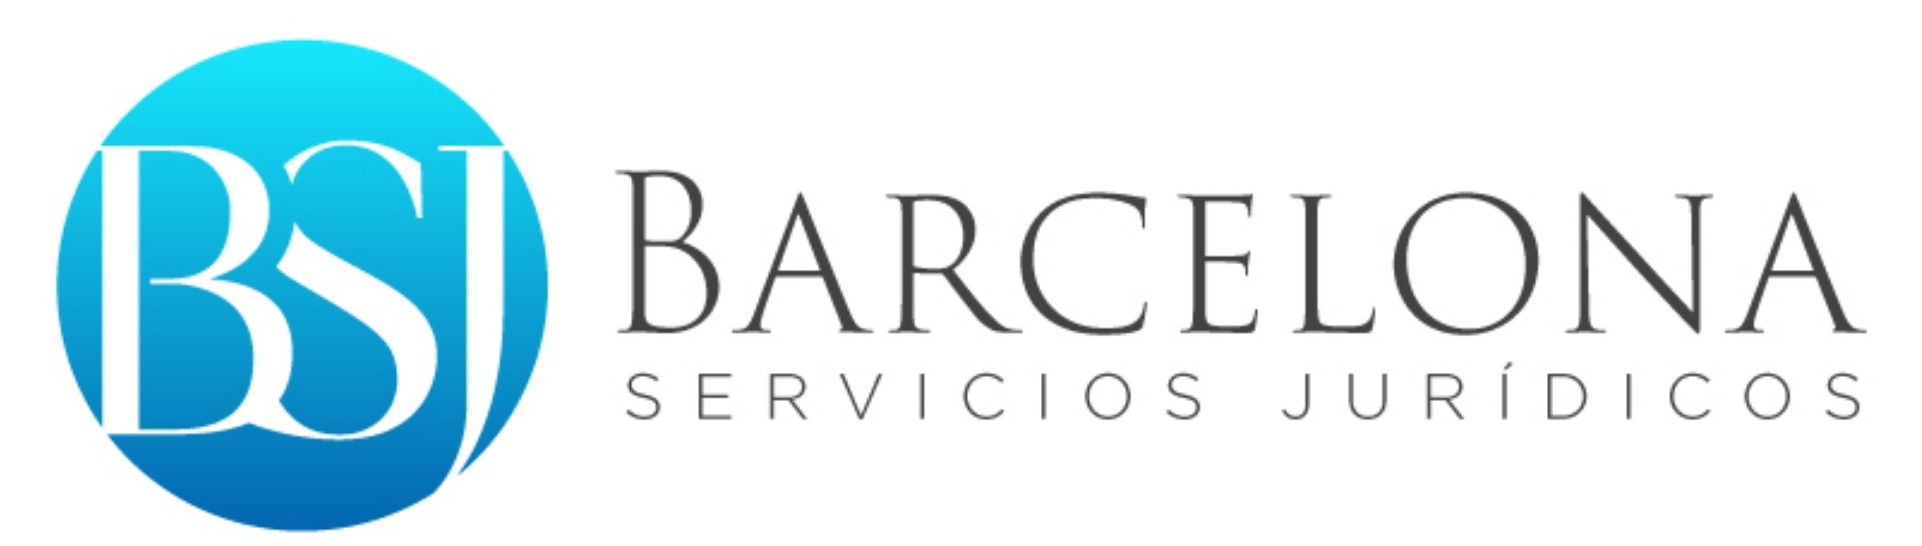 Barcelona Servicios Jurídicos